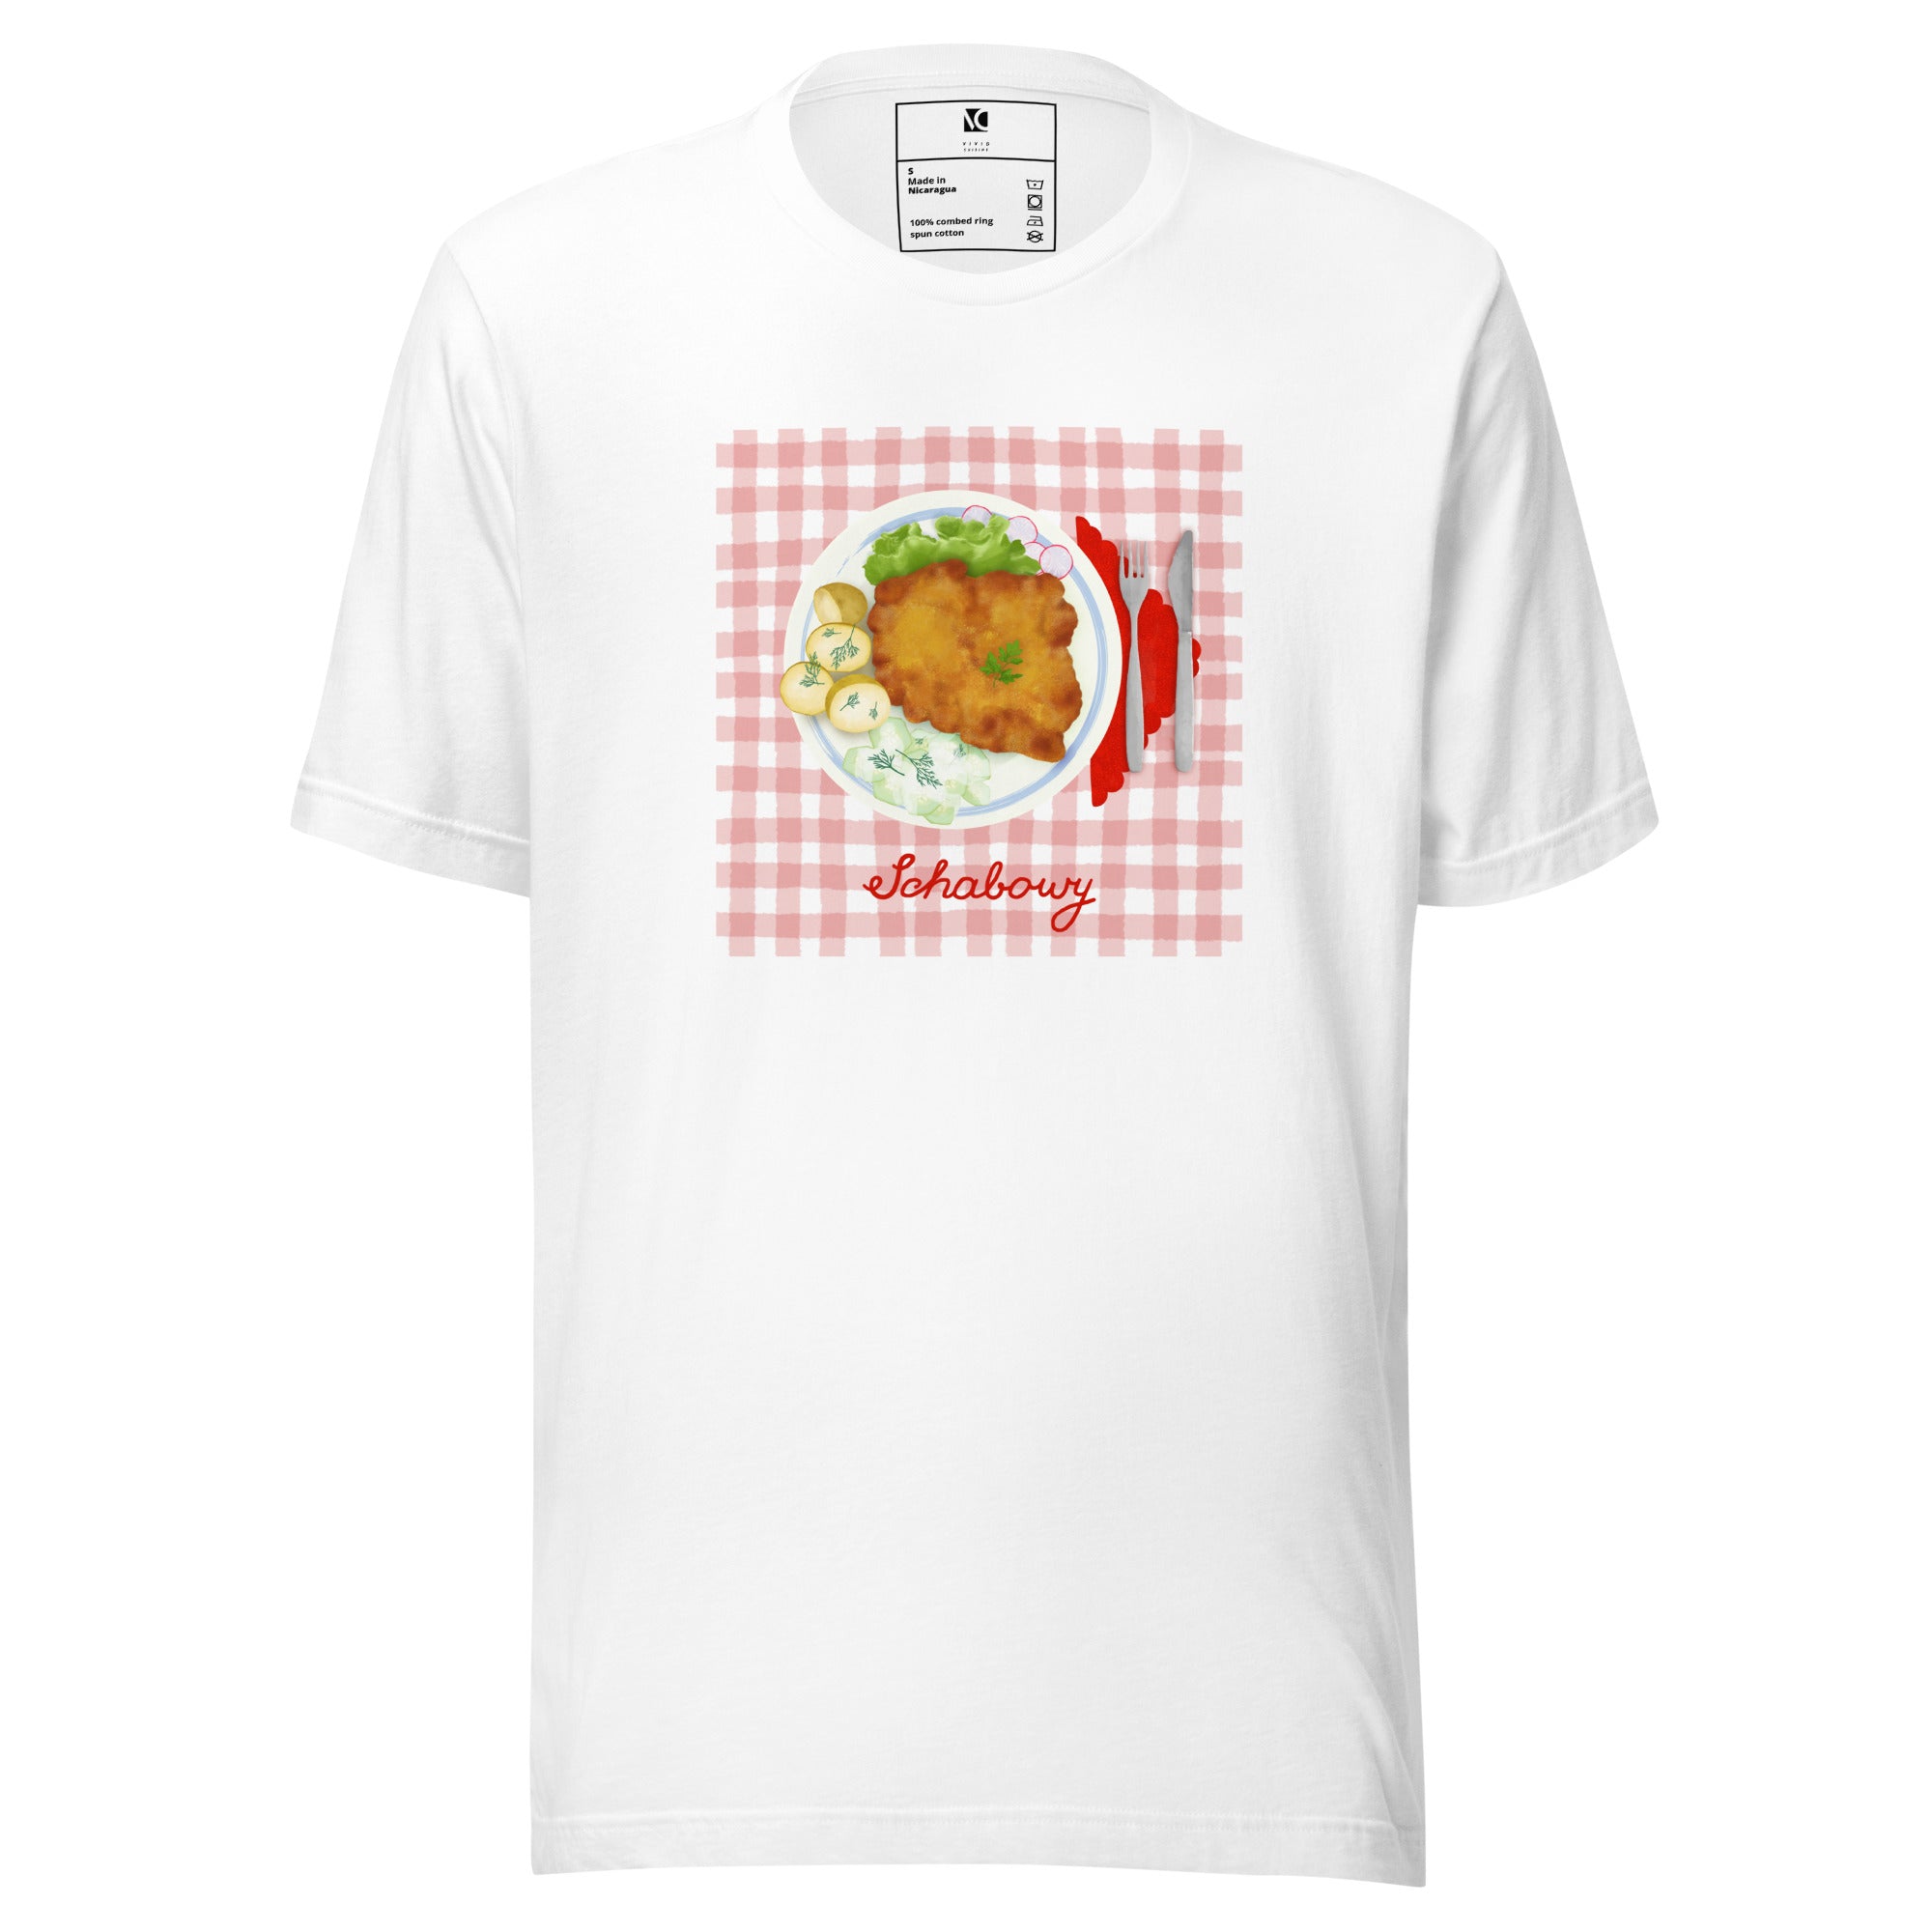 Sunday Schabowy - Unisex T-Shirt